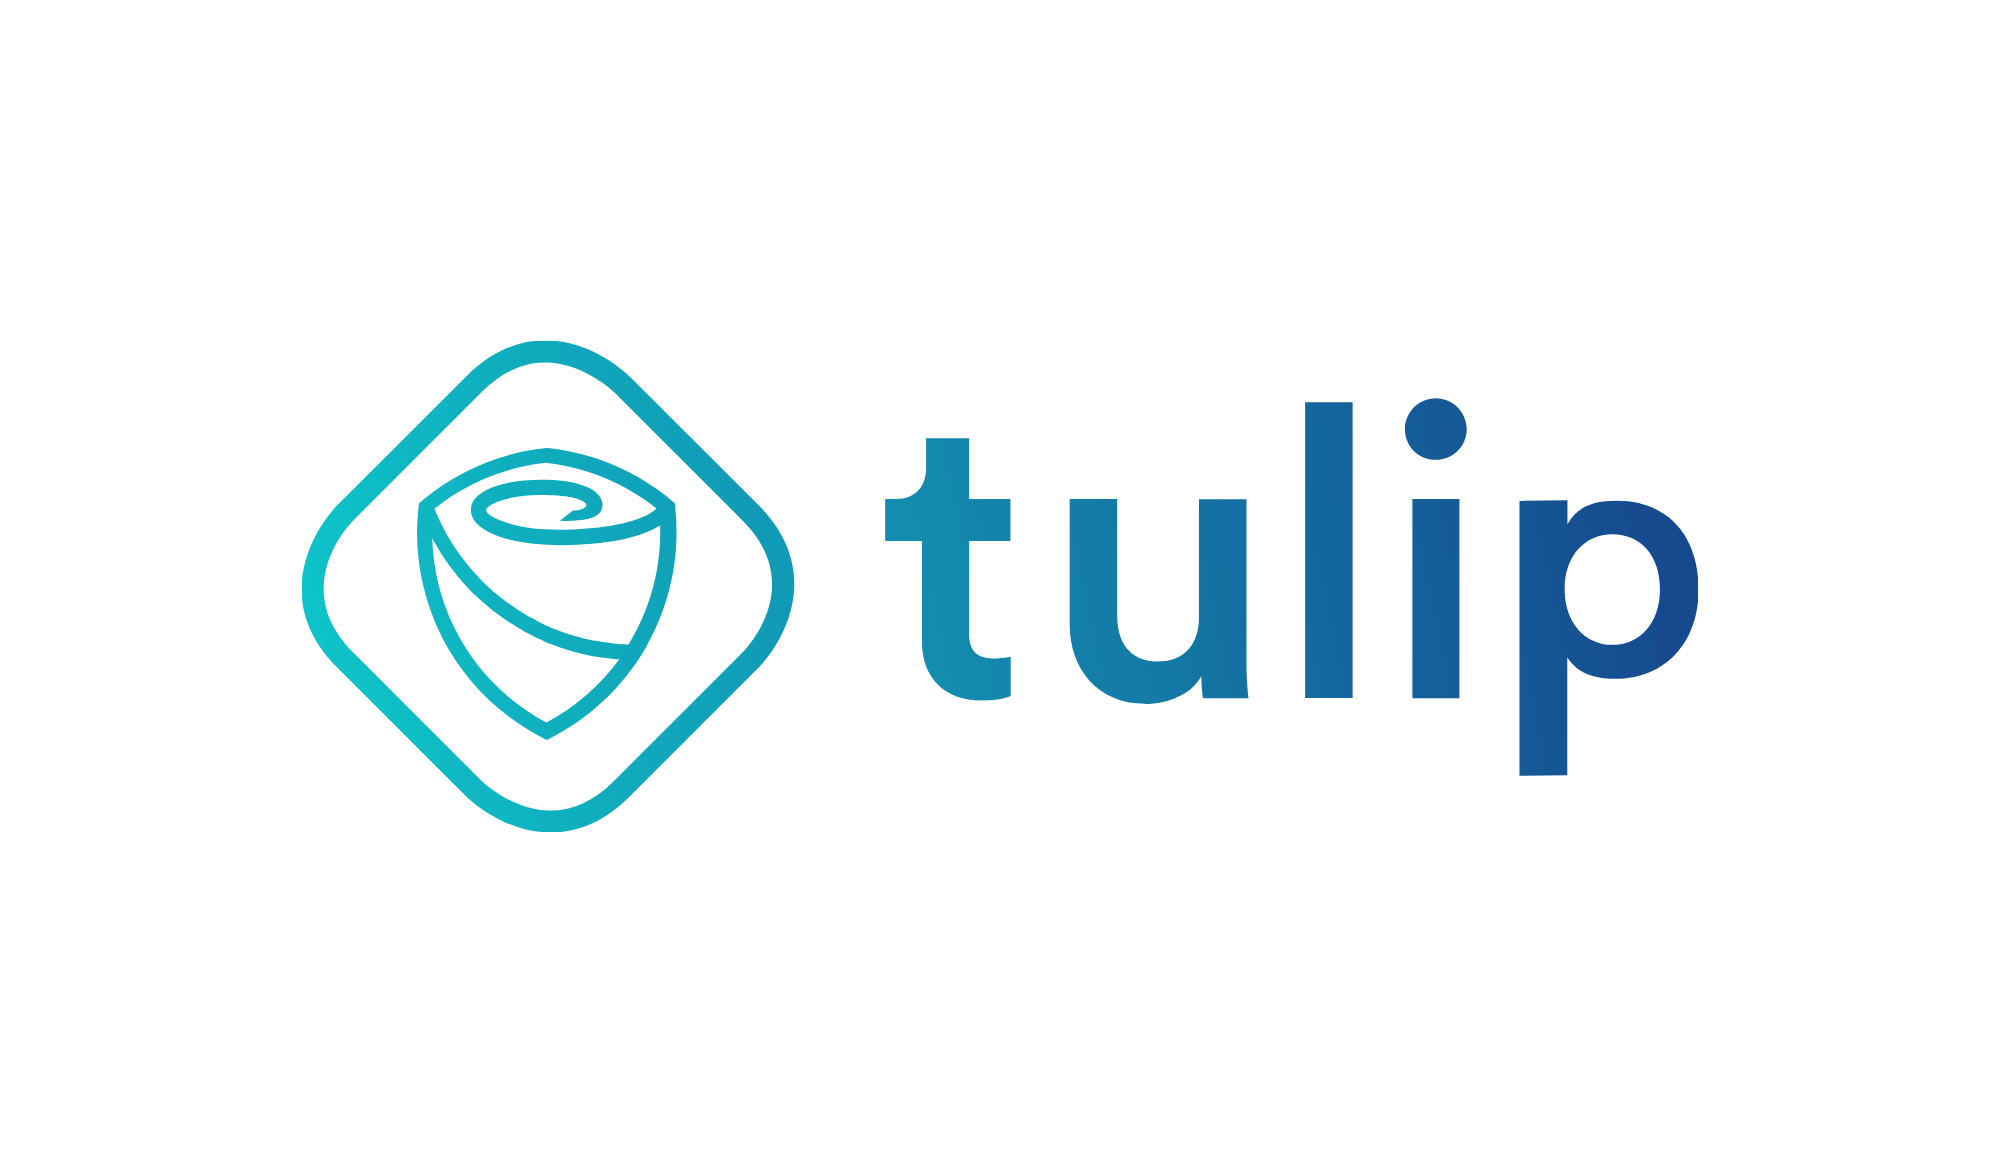 logo tulip